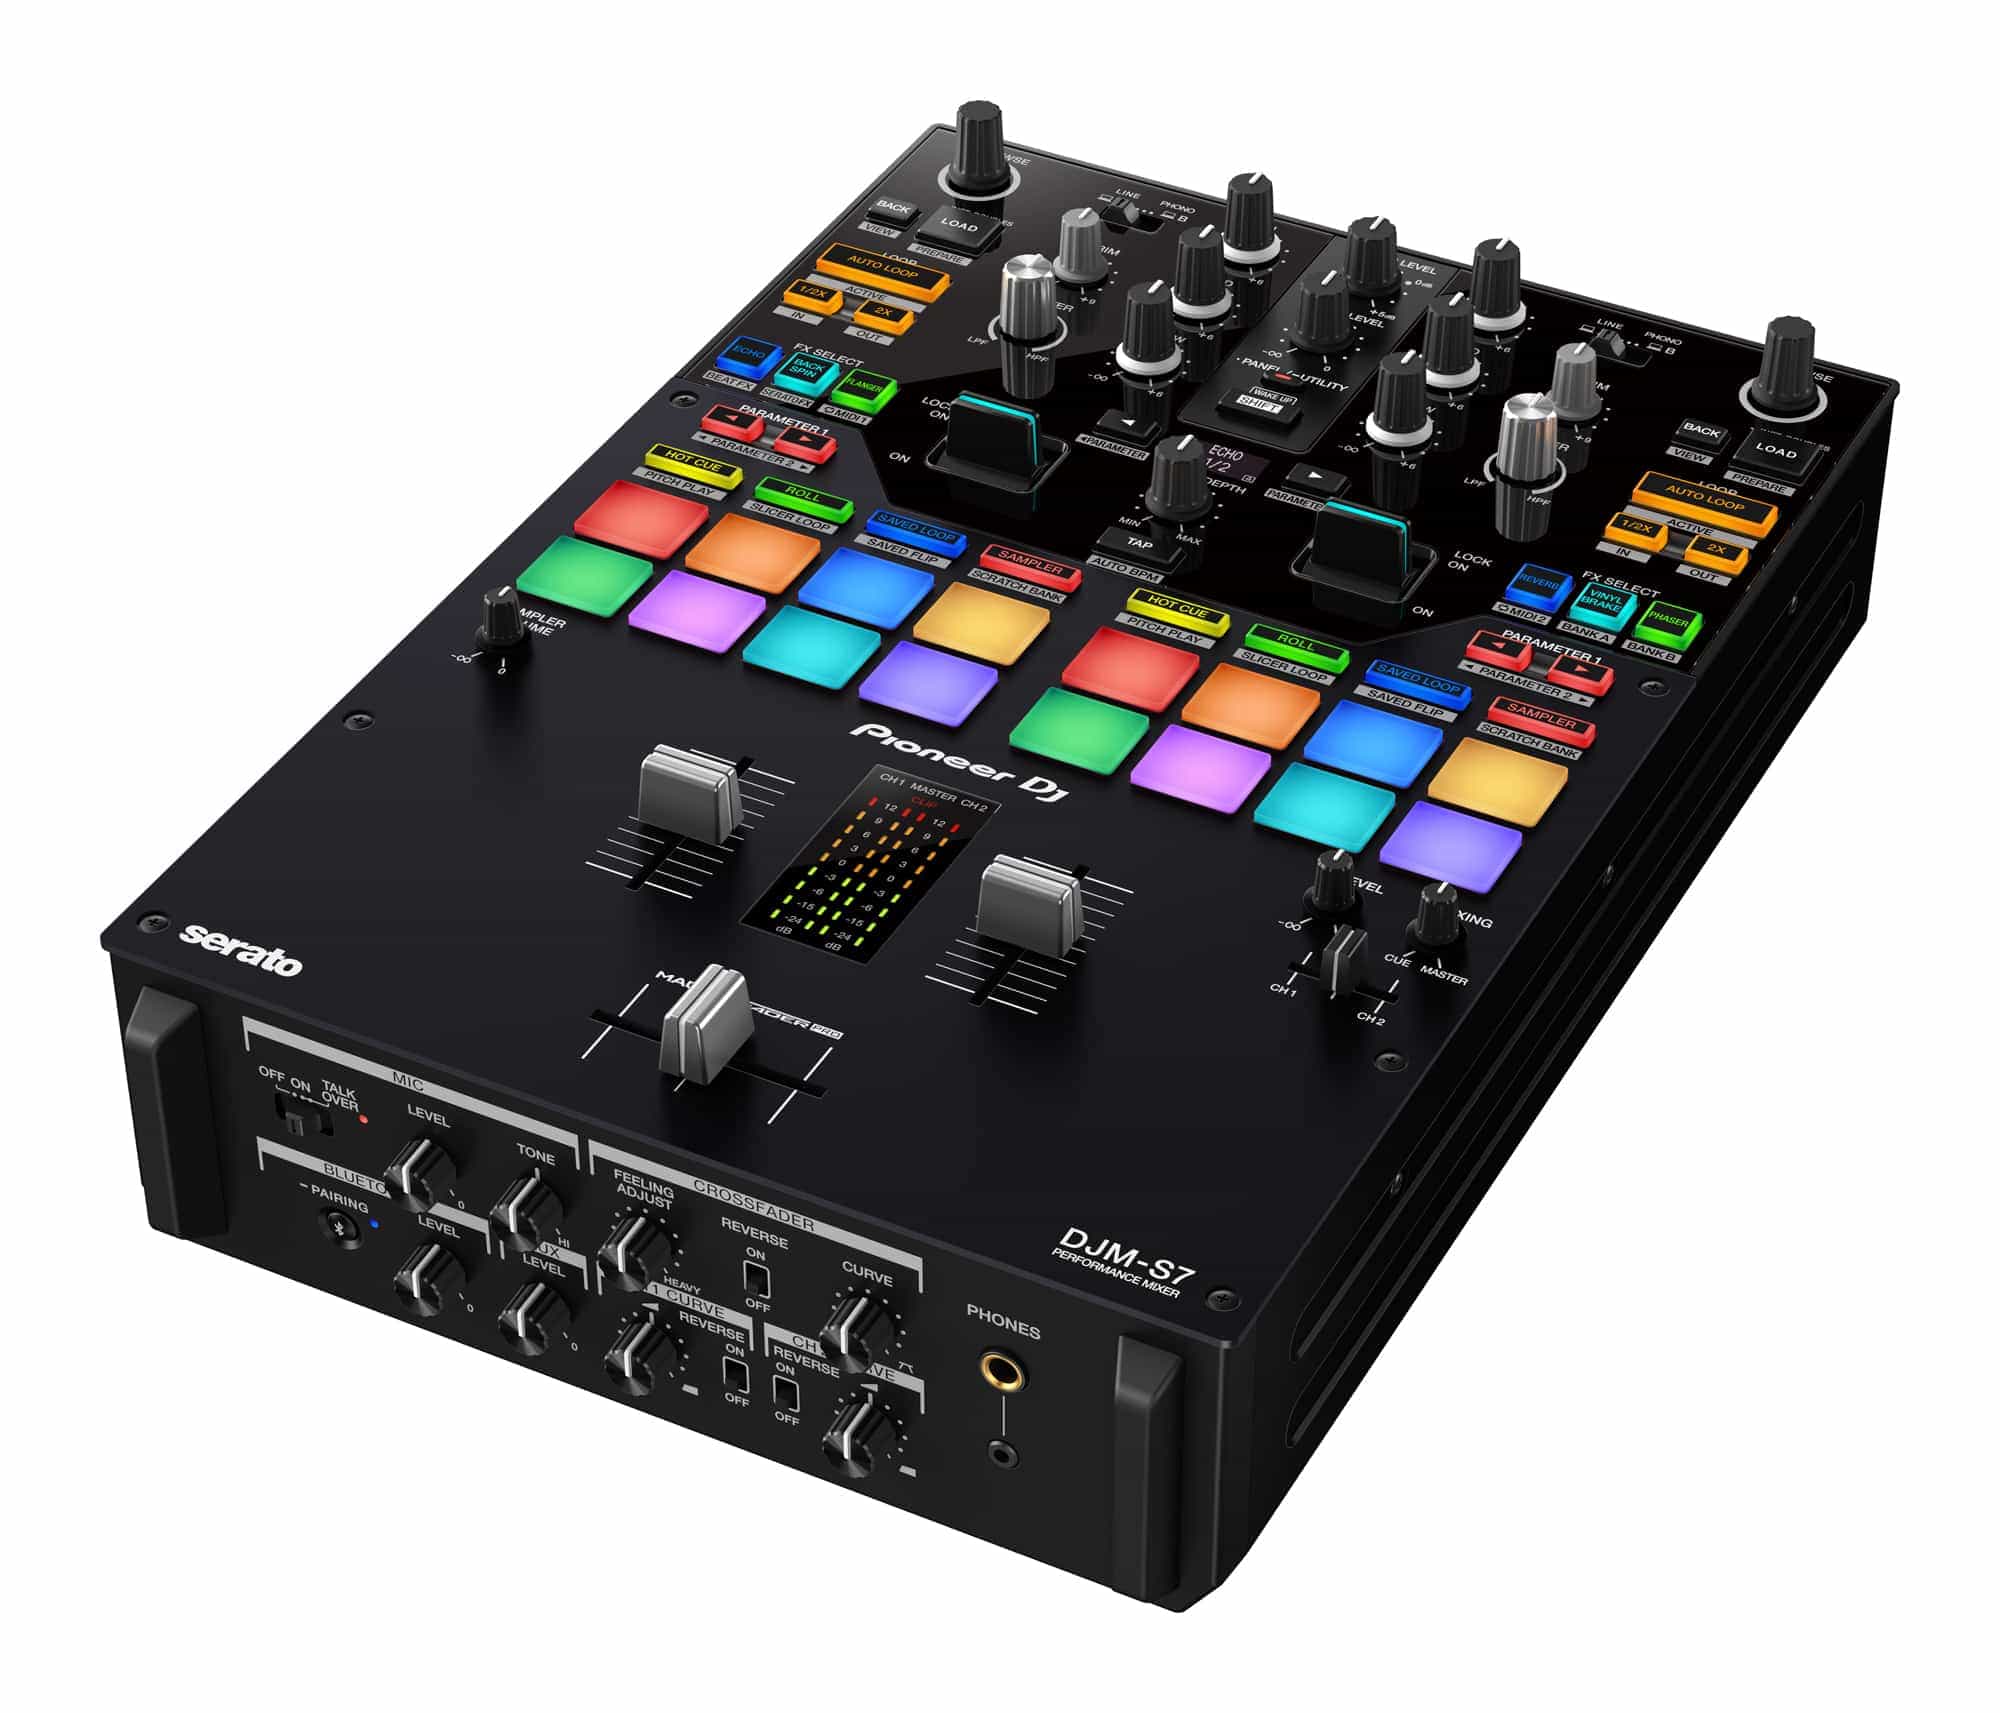 DJM-S7 de DJ Pioneer: un mezclador de batalla de 2 canales con la nueva función "Loop Midi" 10